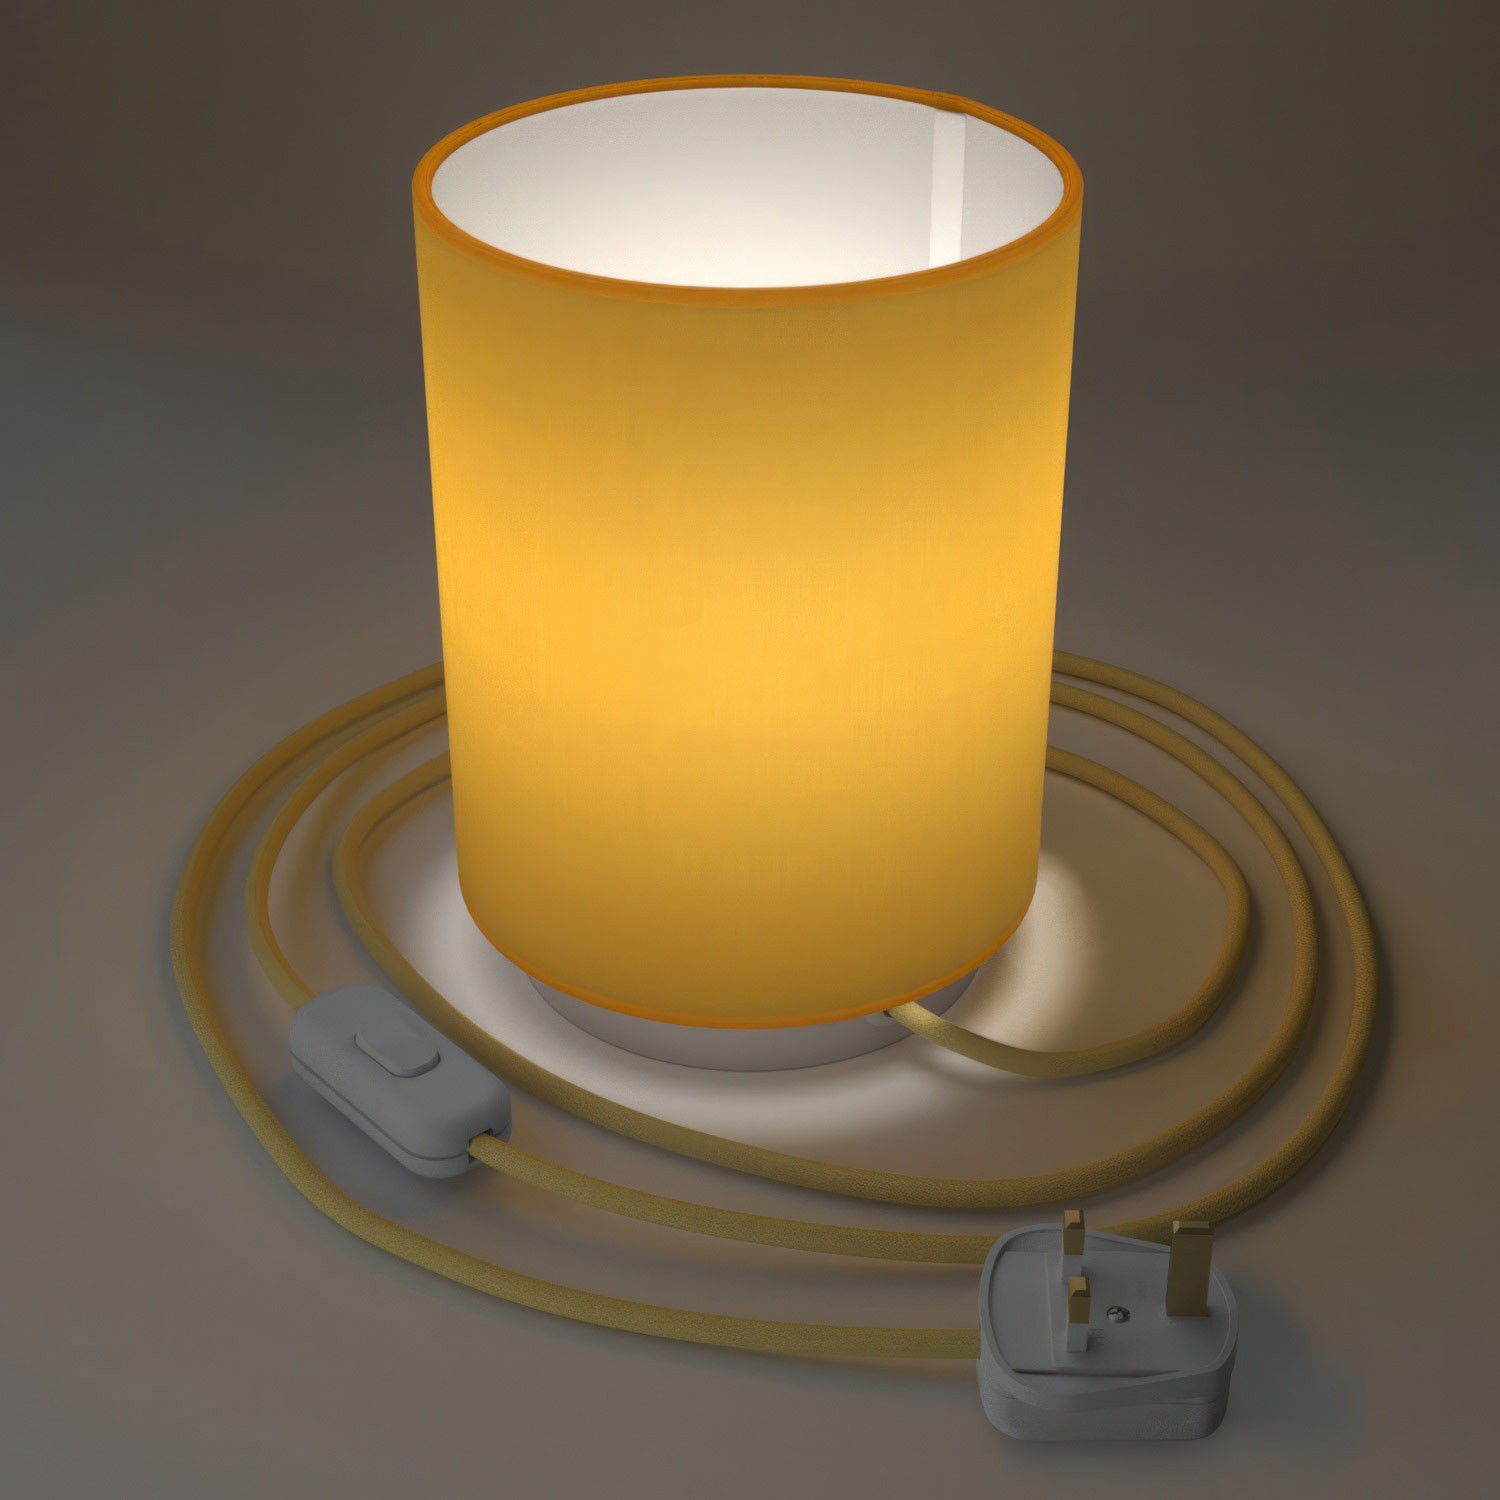 Posaluce de metal con pantalla de cilindro Amarillo Brillante, completo con cable textil, interruptor y enchufe inglesa